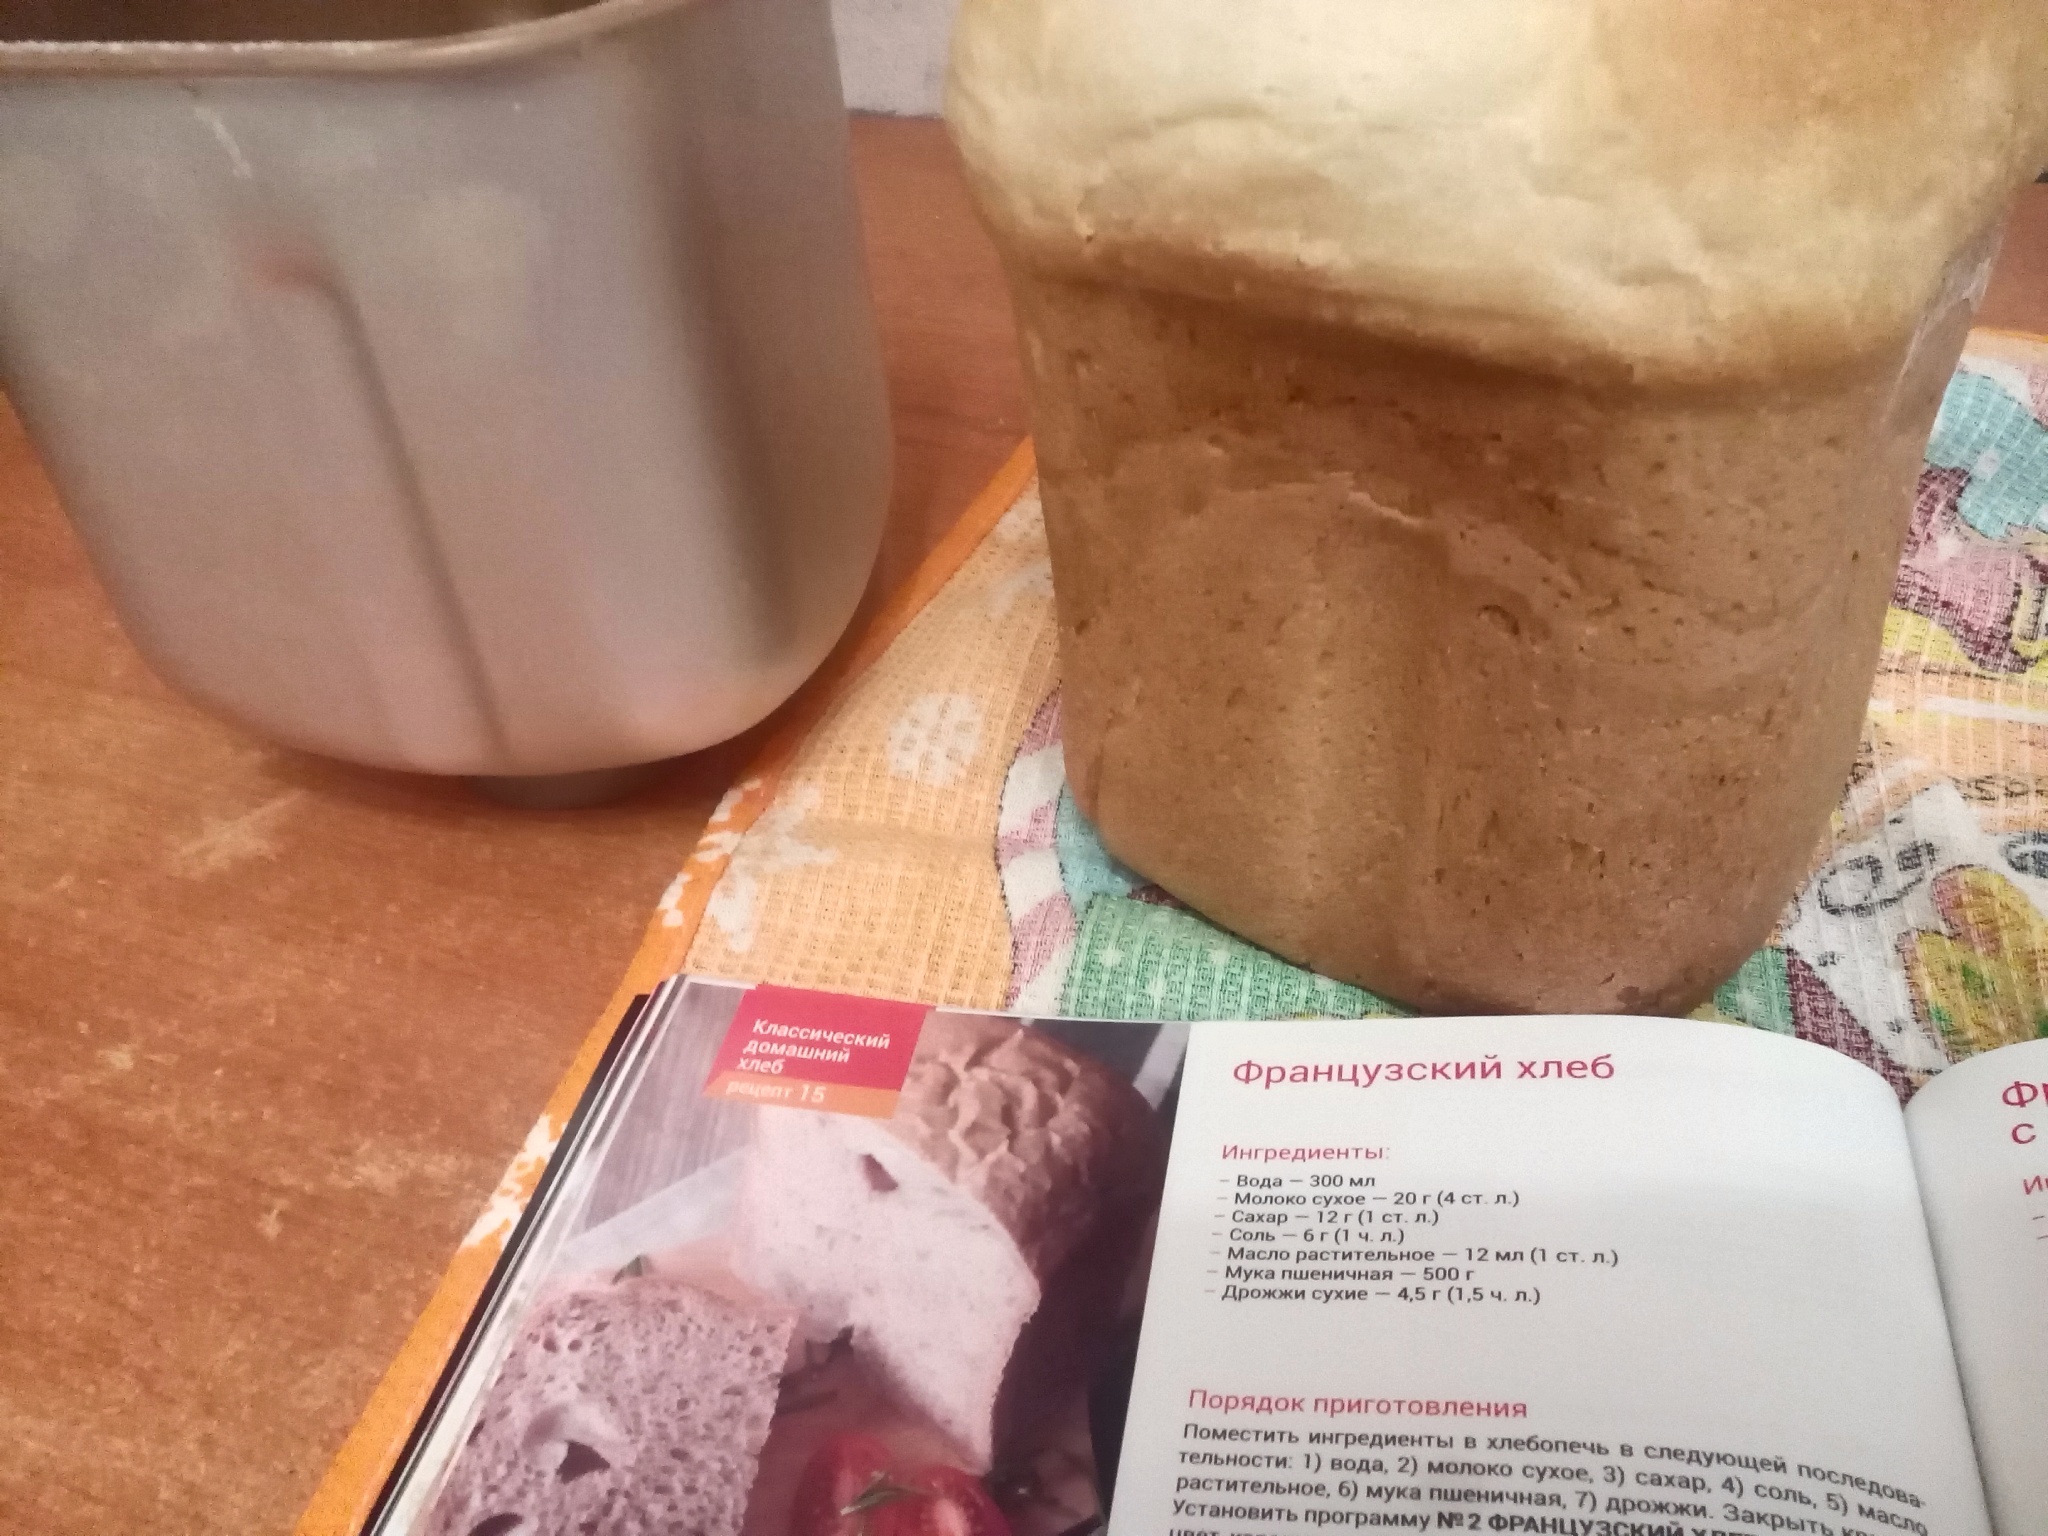 Хлебопечка 1908 рецепты. Йогурт в хлебопечке. Хлеб в хлебопечке хлебопечка Redmond RBM-1908. Книжка с рецептами для хлебопечки редмонд. Книга рецептов хлеба для хлебопечки редмонд.